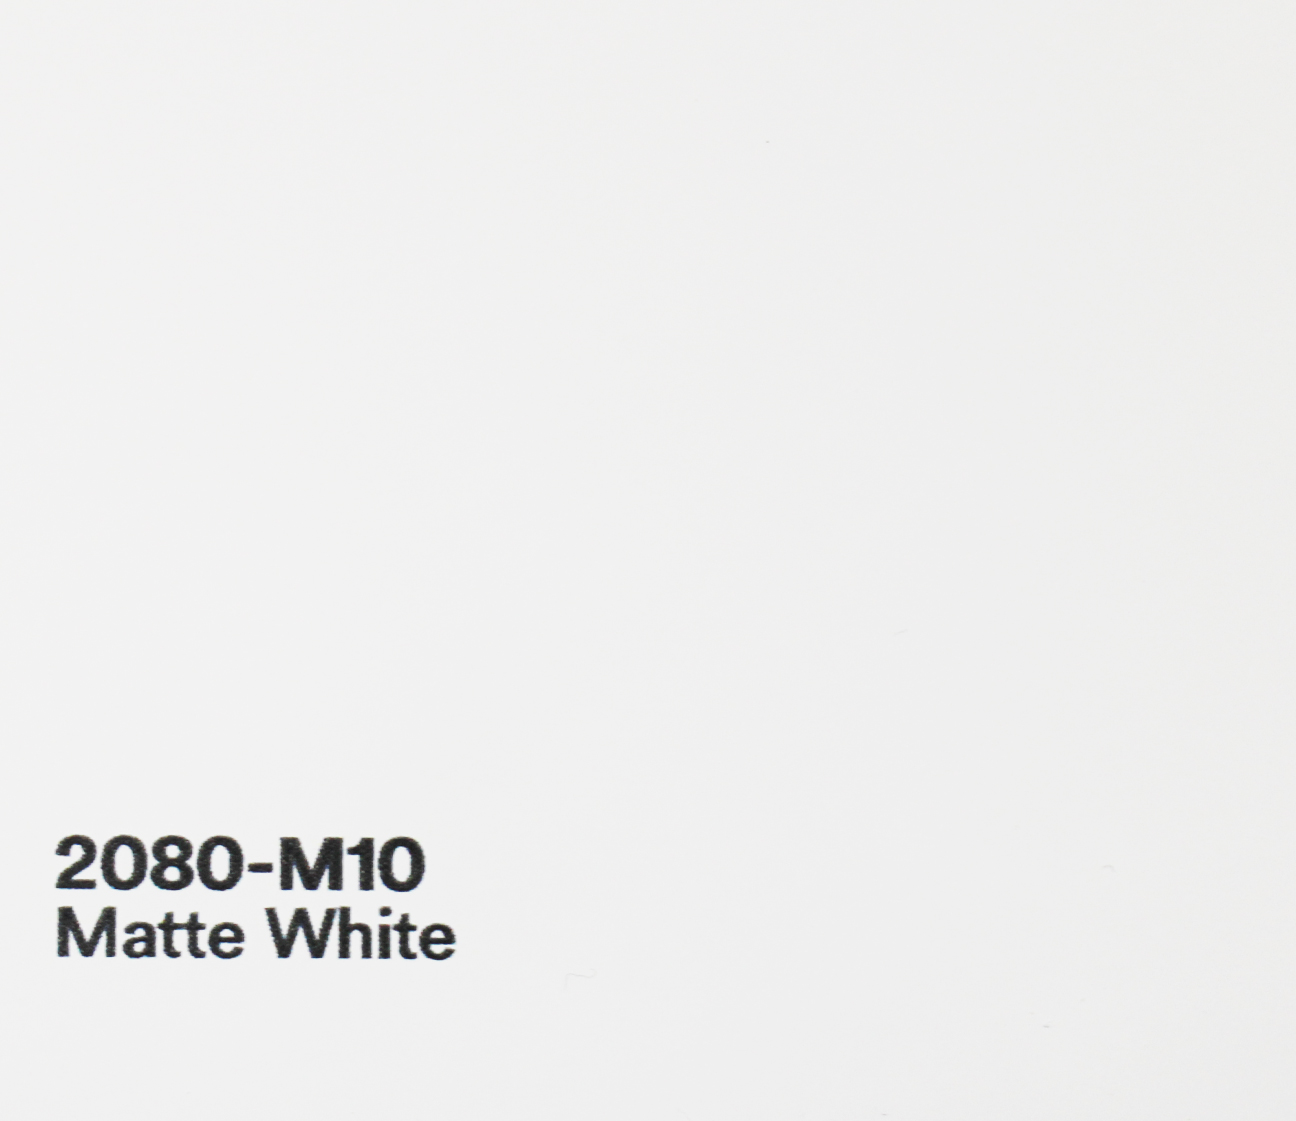 Autofolie-3M Car Wrap-Serie 2080-Farbige Matt Glanz Seidenmatt  Seidenglanz-Metallic-Sparkle-Pearl-Satin-Glimmer Folie-Car Wrapping-Folie-statt-Lack-Vollverklebung-Lackfolie-Klebefolie-Schutzfolie-billig-und-gut-kaufen